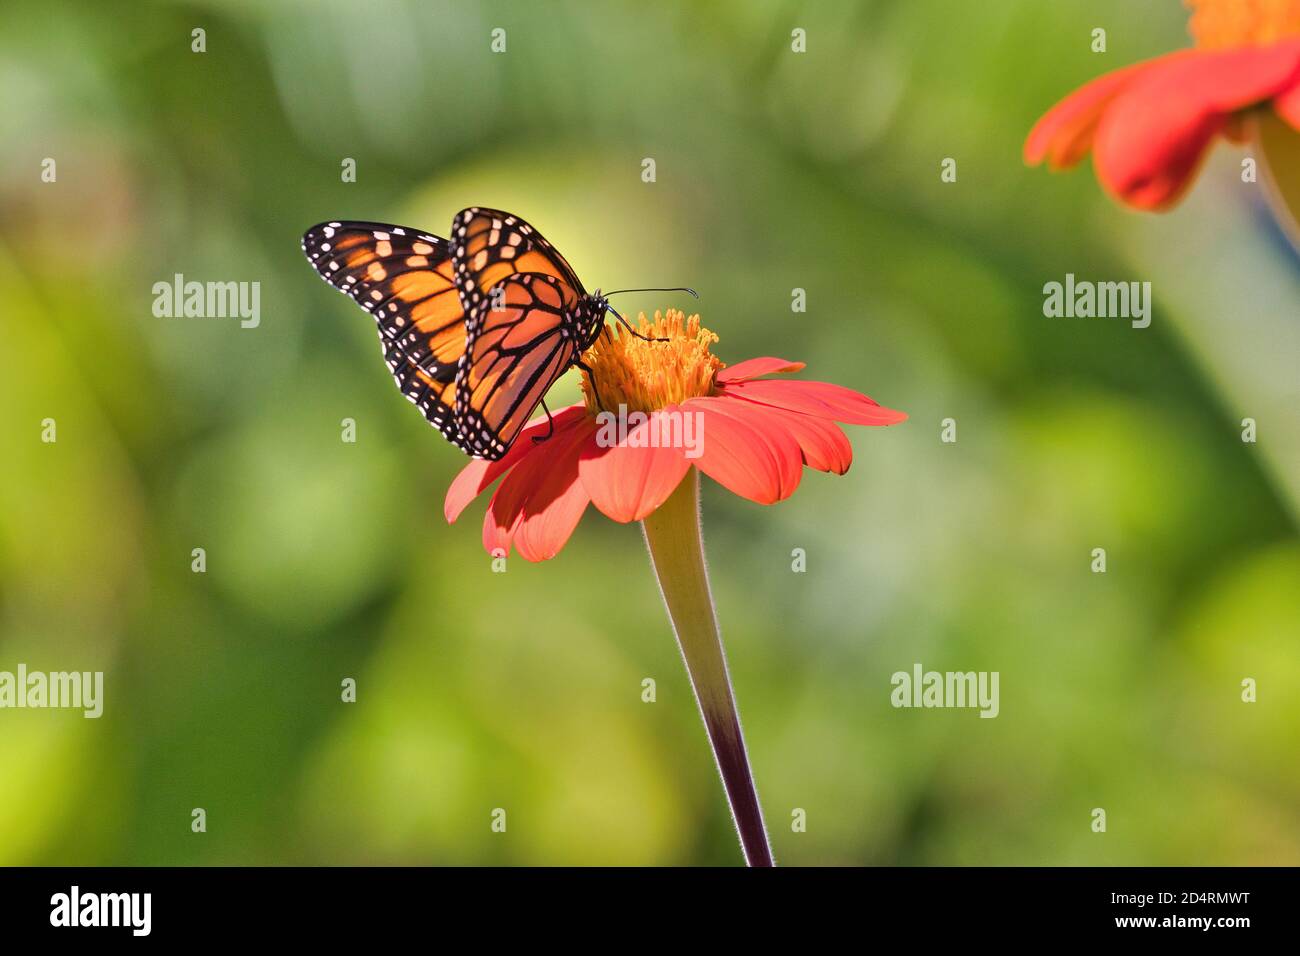 Schöner Monarch Schmetterling von hinten gesehen mit Flügeln leicht ausgebreitet nippend Nektar von einer hellen orange Blume. Stockfoto